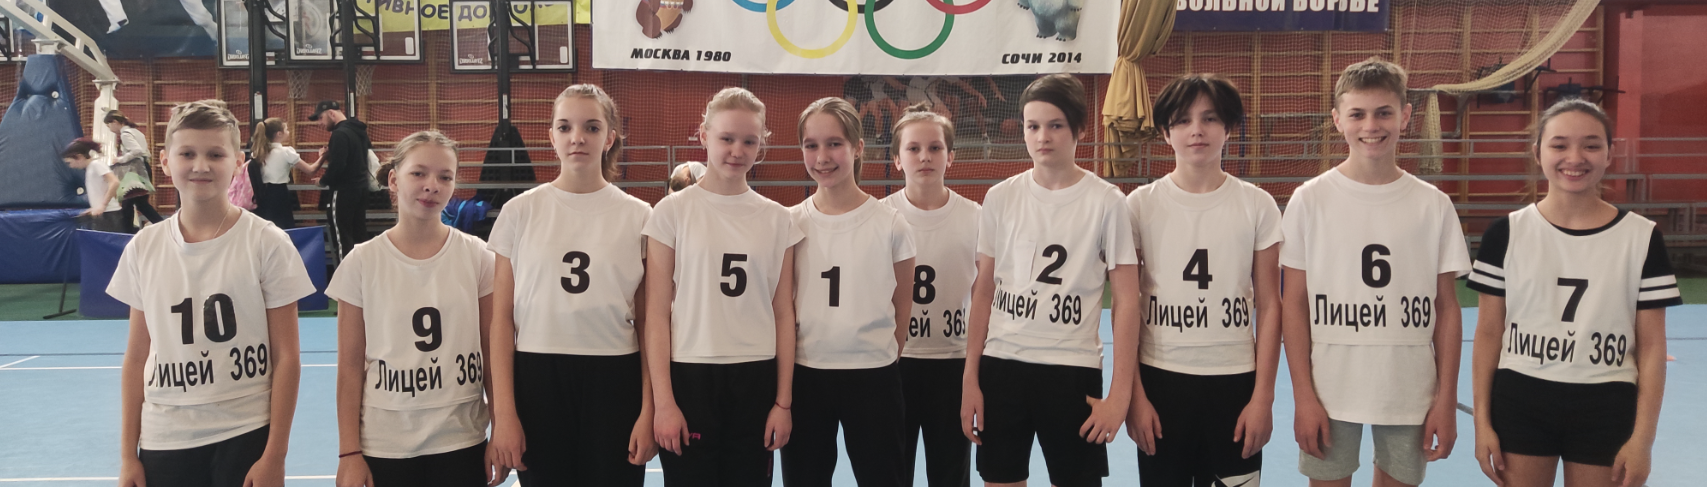 Итоги проведения районного этапа Всероссийских спортивных соревнований школьников «Президентские состязания» 6б